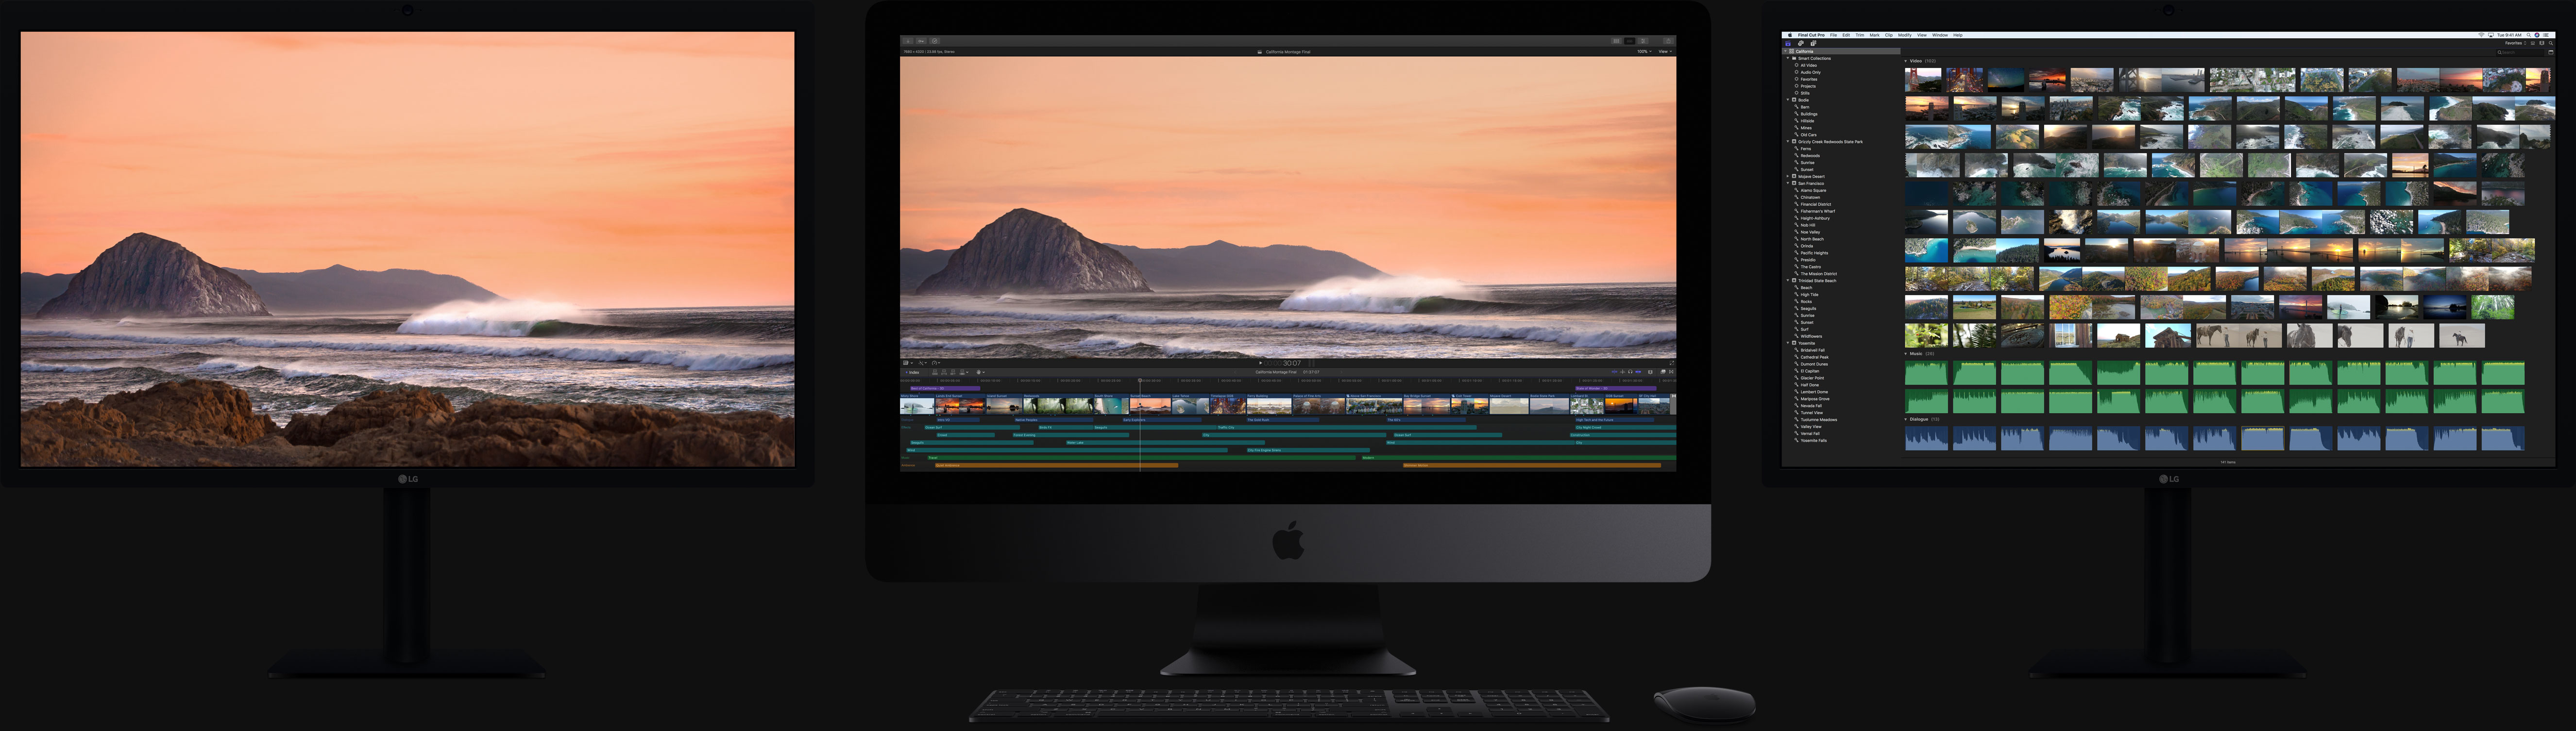 Mac Monitors For Photo Editing